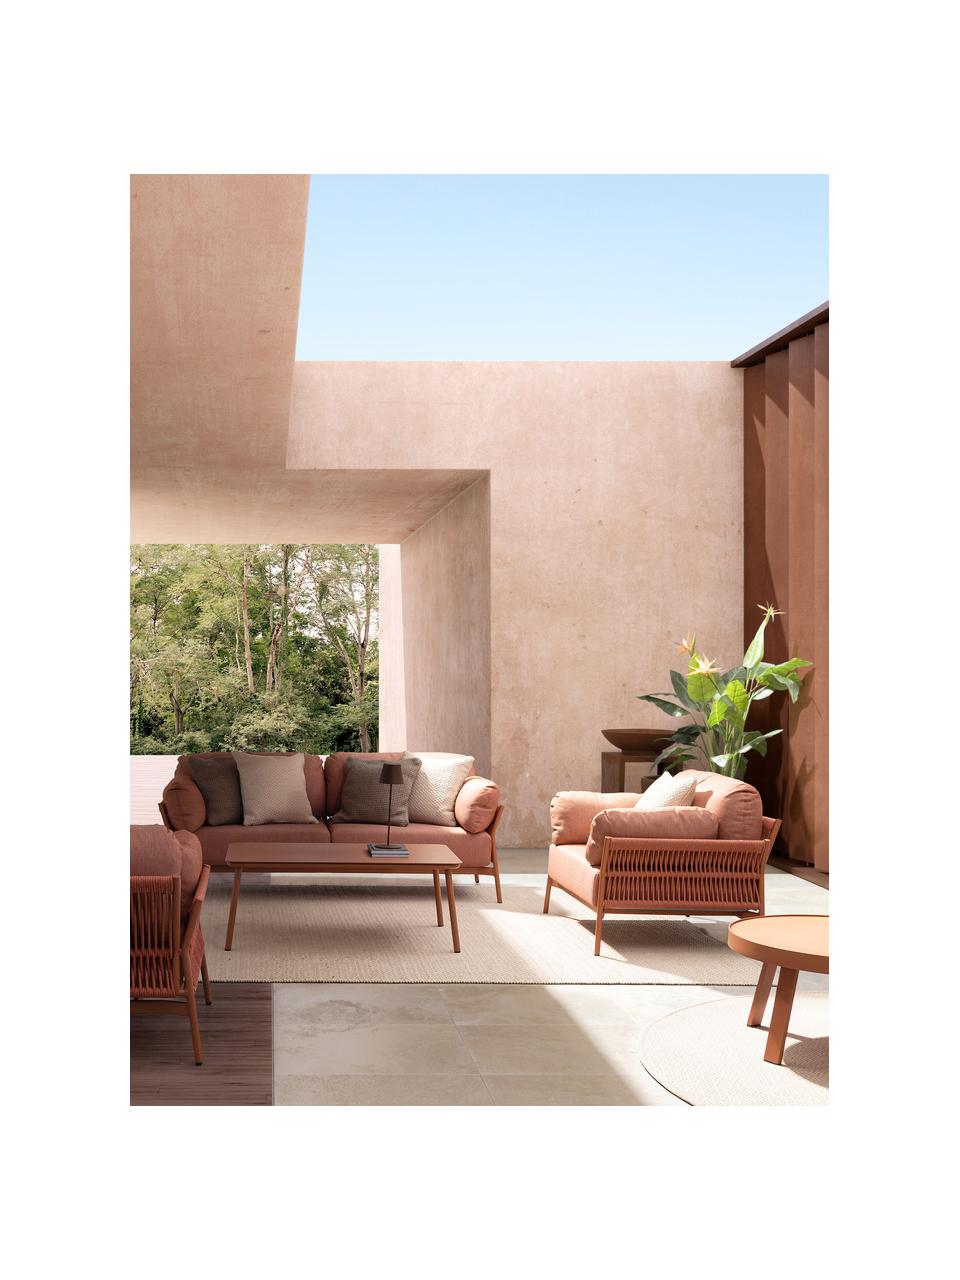 Sofa ogrodowa Sierra (2-osobowa), Tapicerka: 100% polipropylen, Stelaż: aluminium malowane proszk, Tkanina w odcieniu terakoty, S 183 x G 80 cm